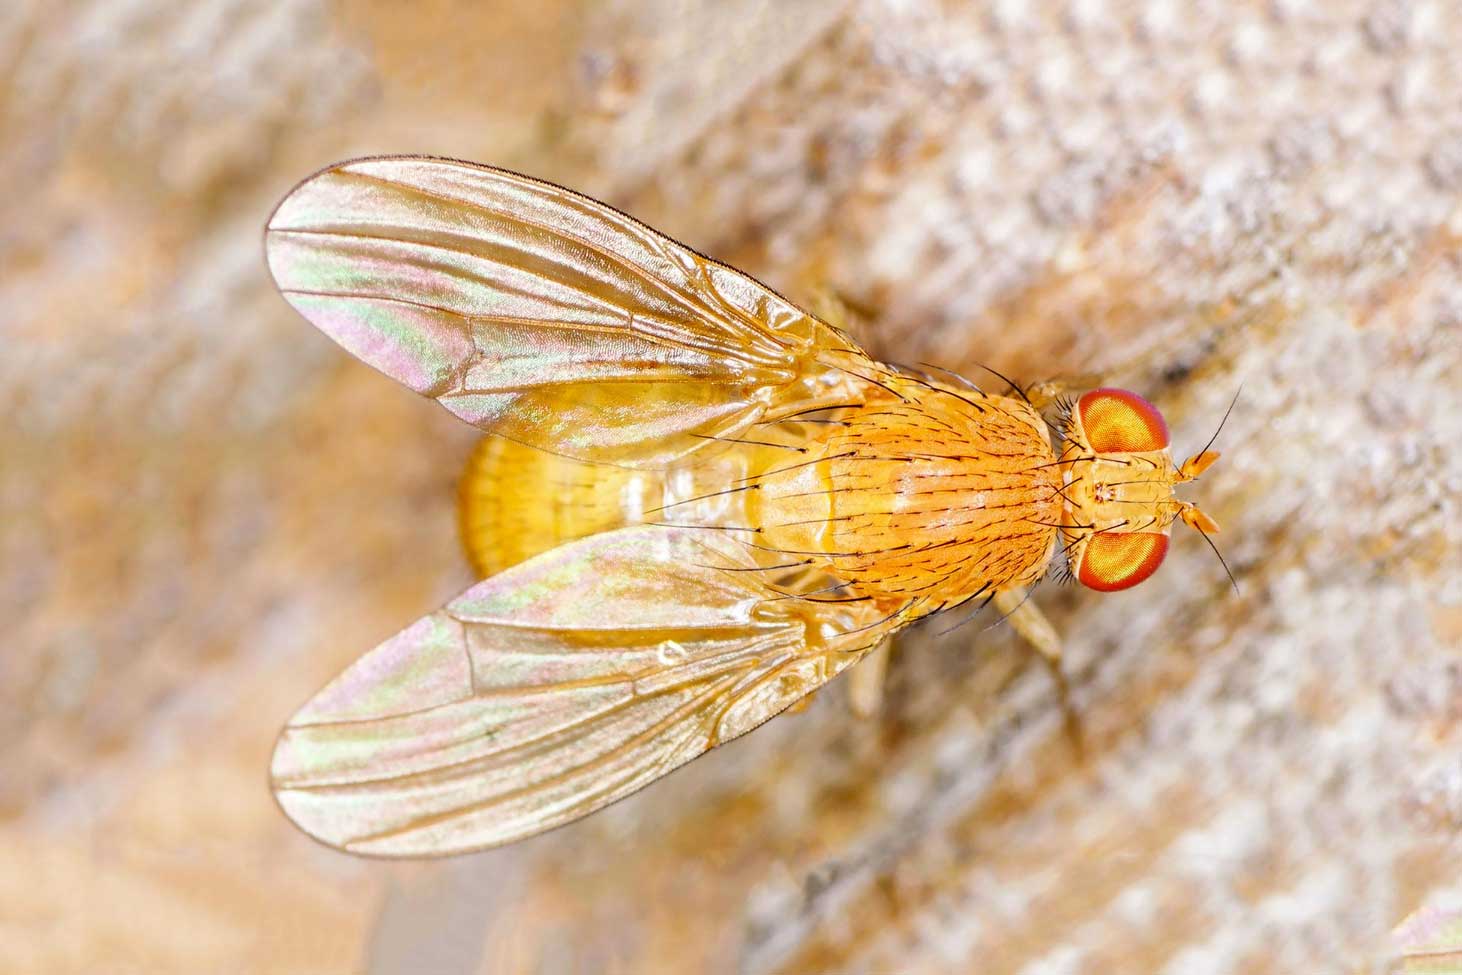 Macro shot of a golden Common fruit fly Drosophila melanogaster